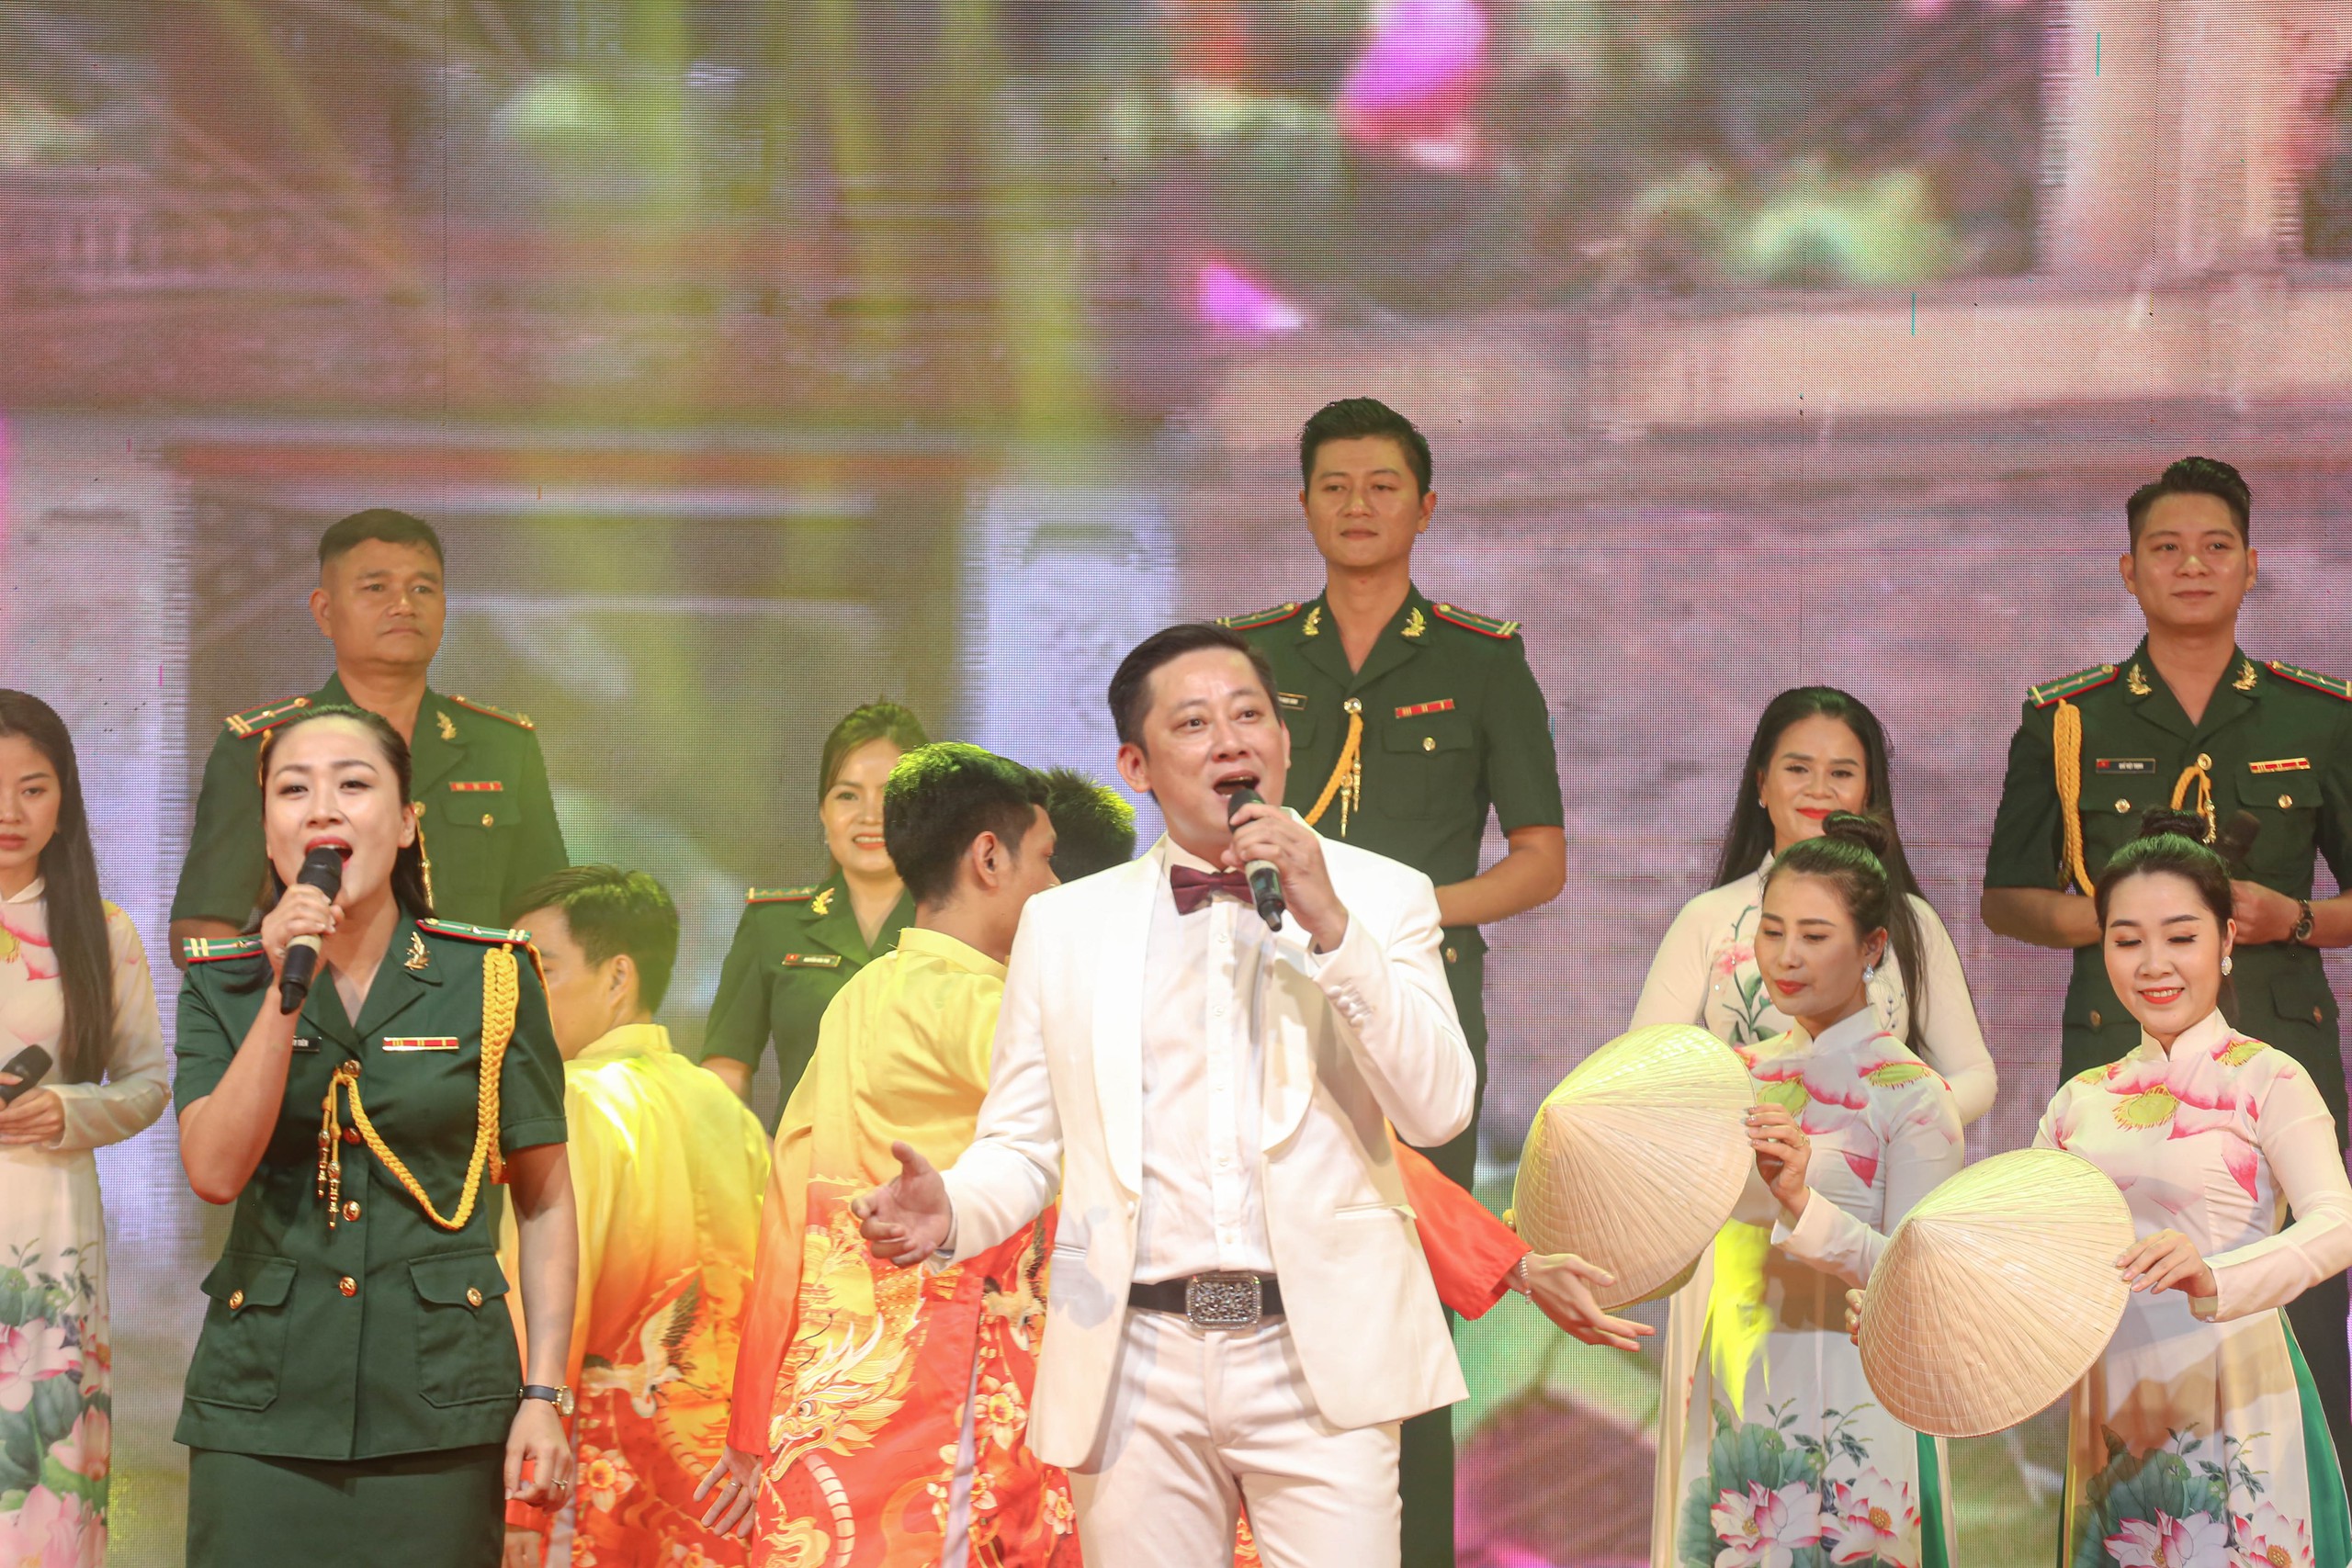 Chương trình nghệ thuật còn có sự góp mặt của Nhát hát ca kịch Huế và Bội đội Biên phòng tỉnh Thừa Thiên - Huế